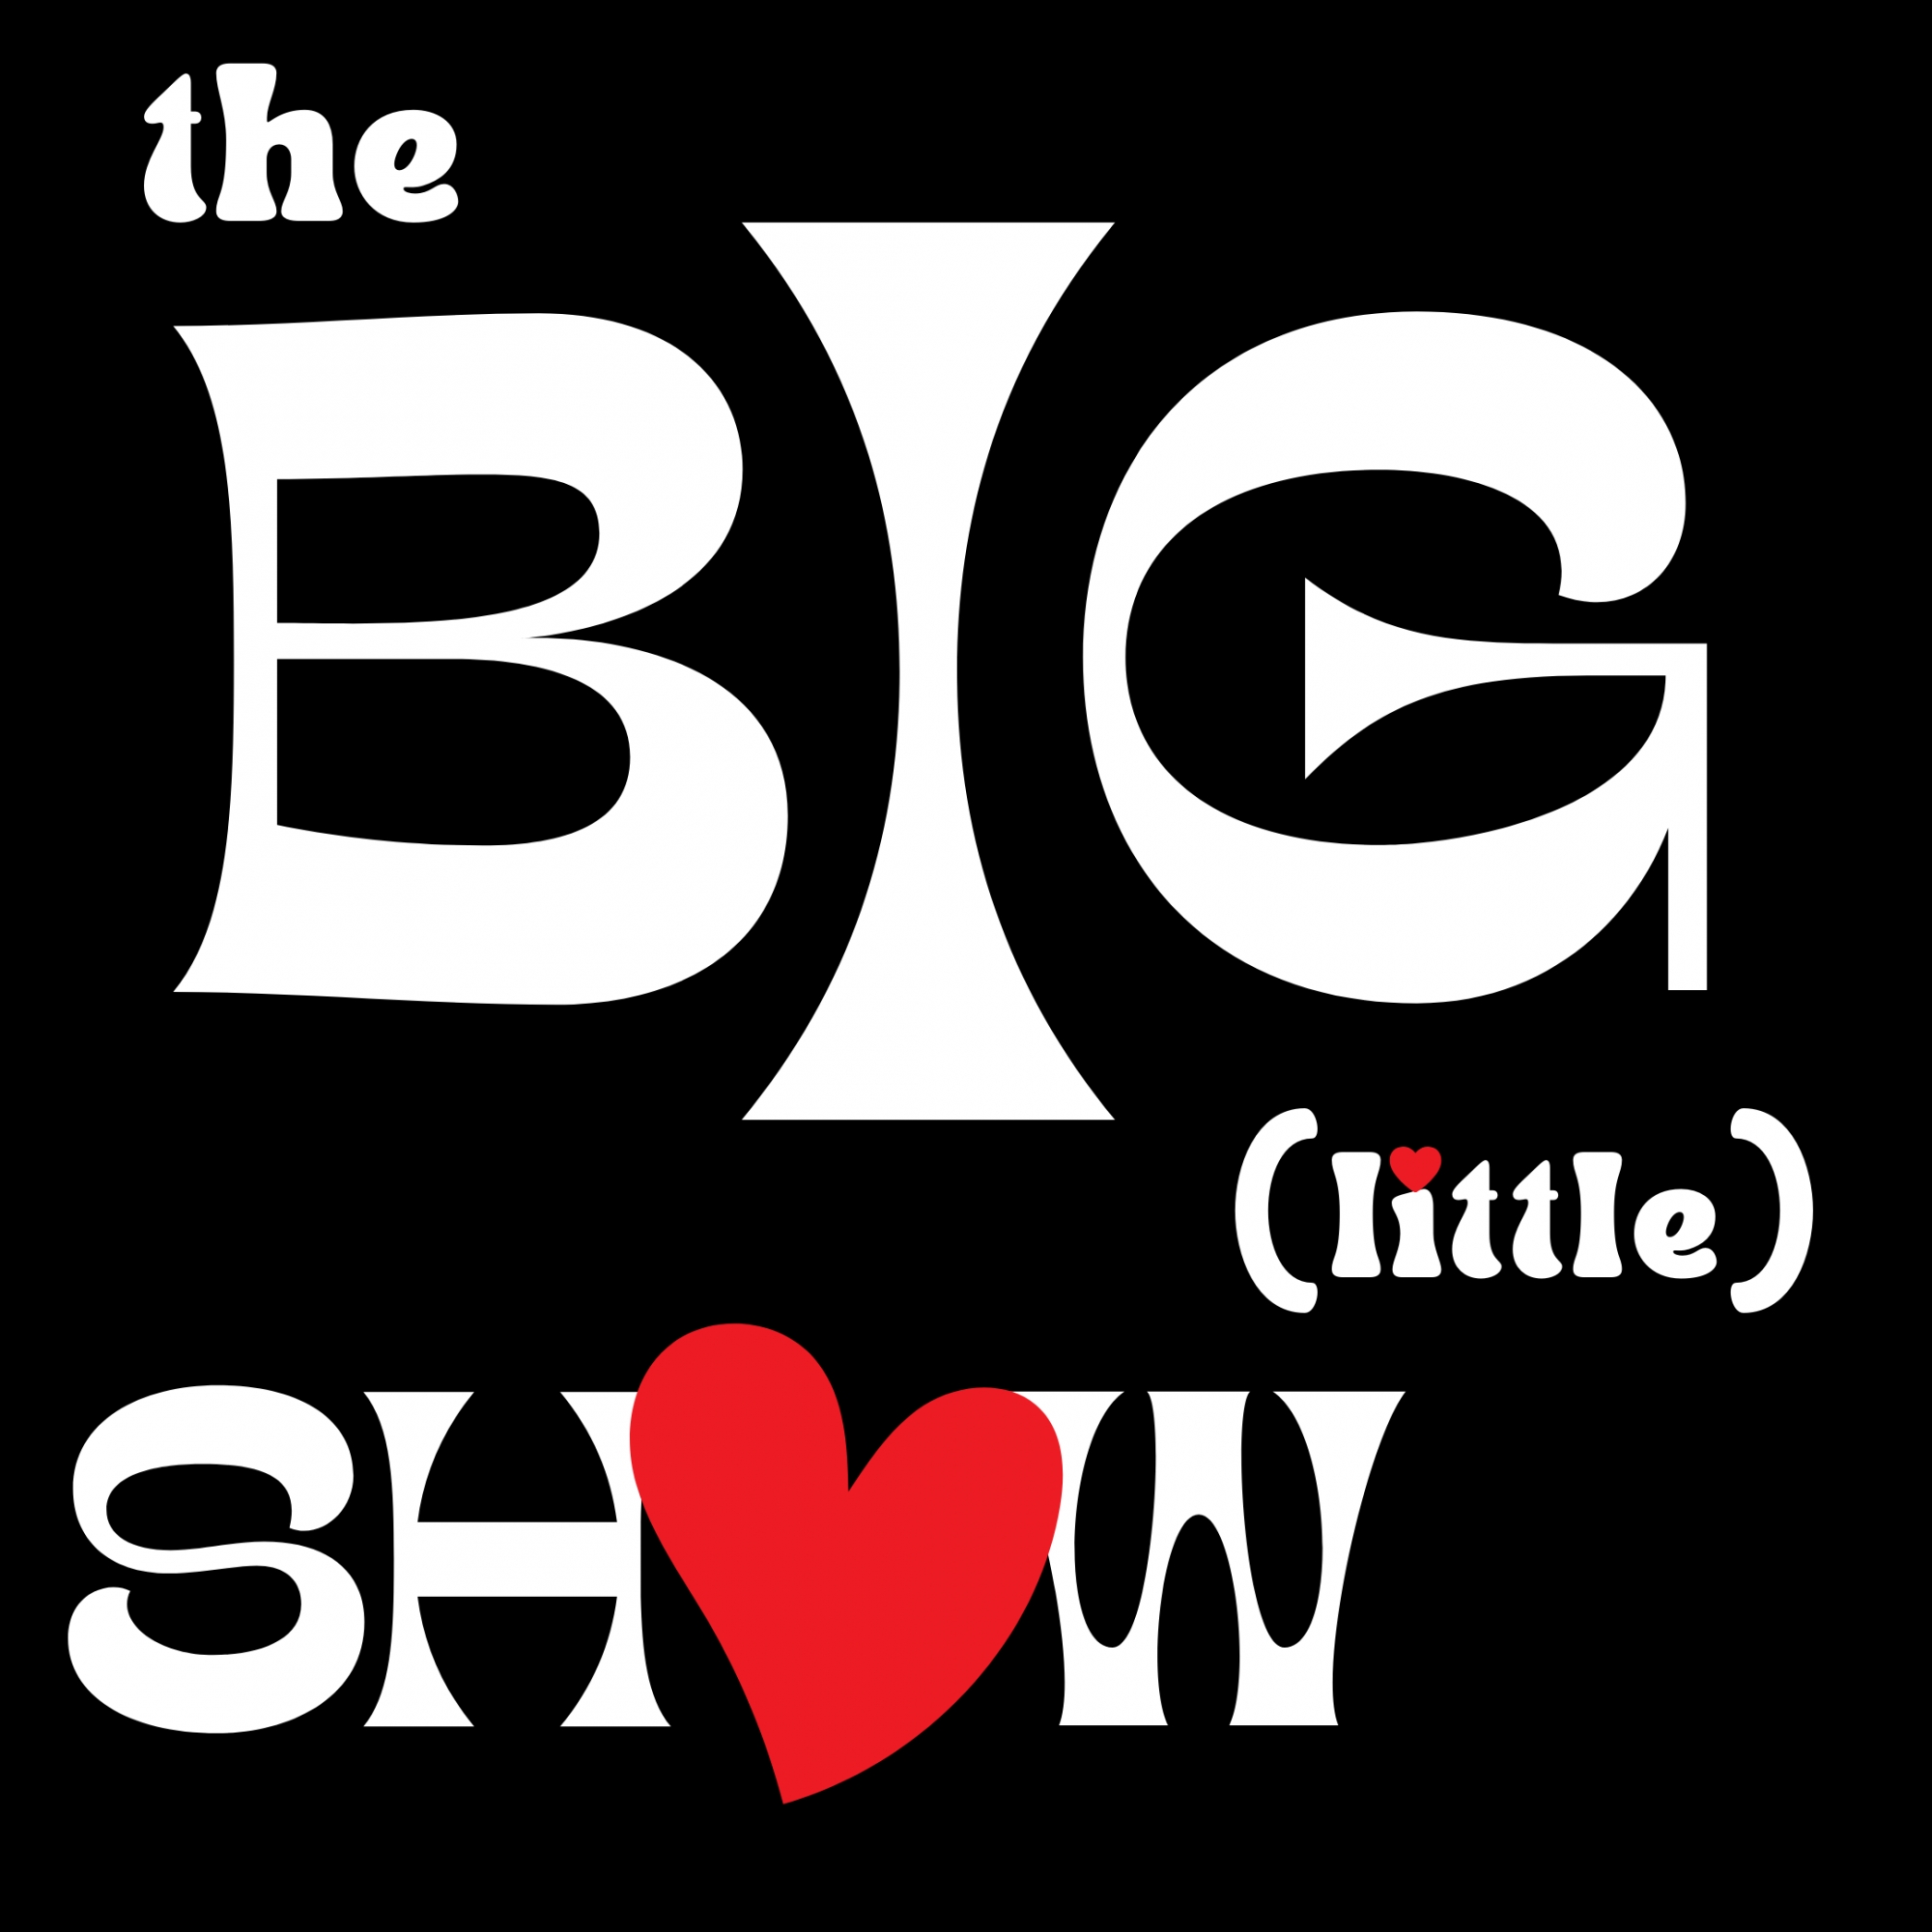 Dec '22 The Big (little) Show - Show 6